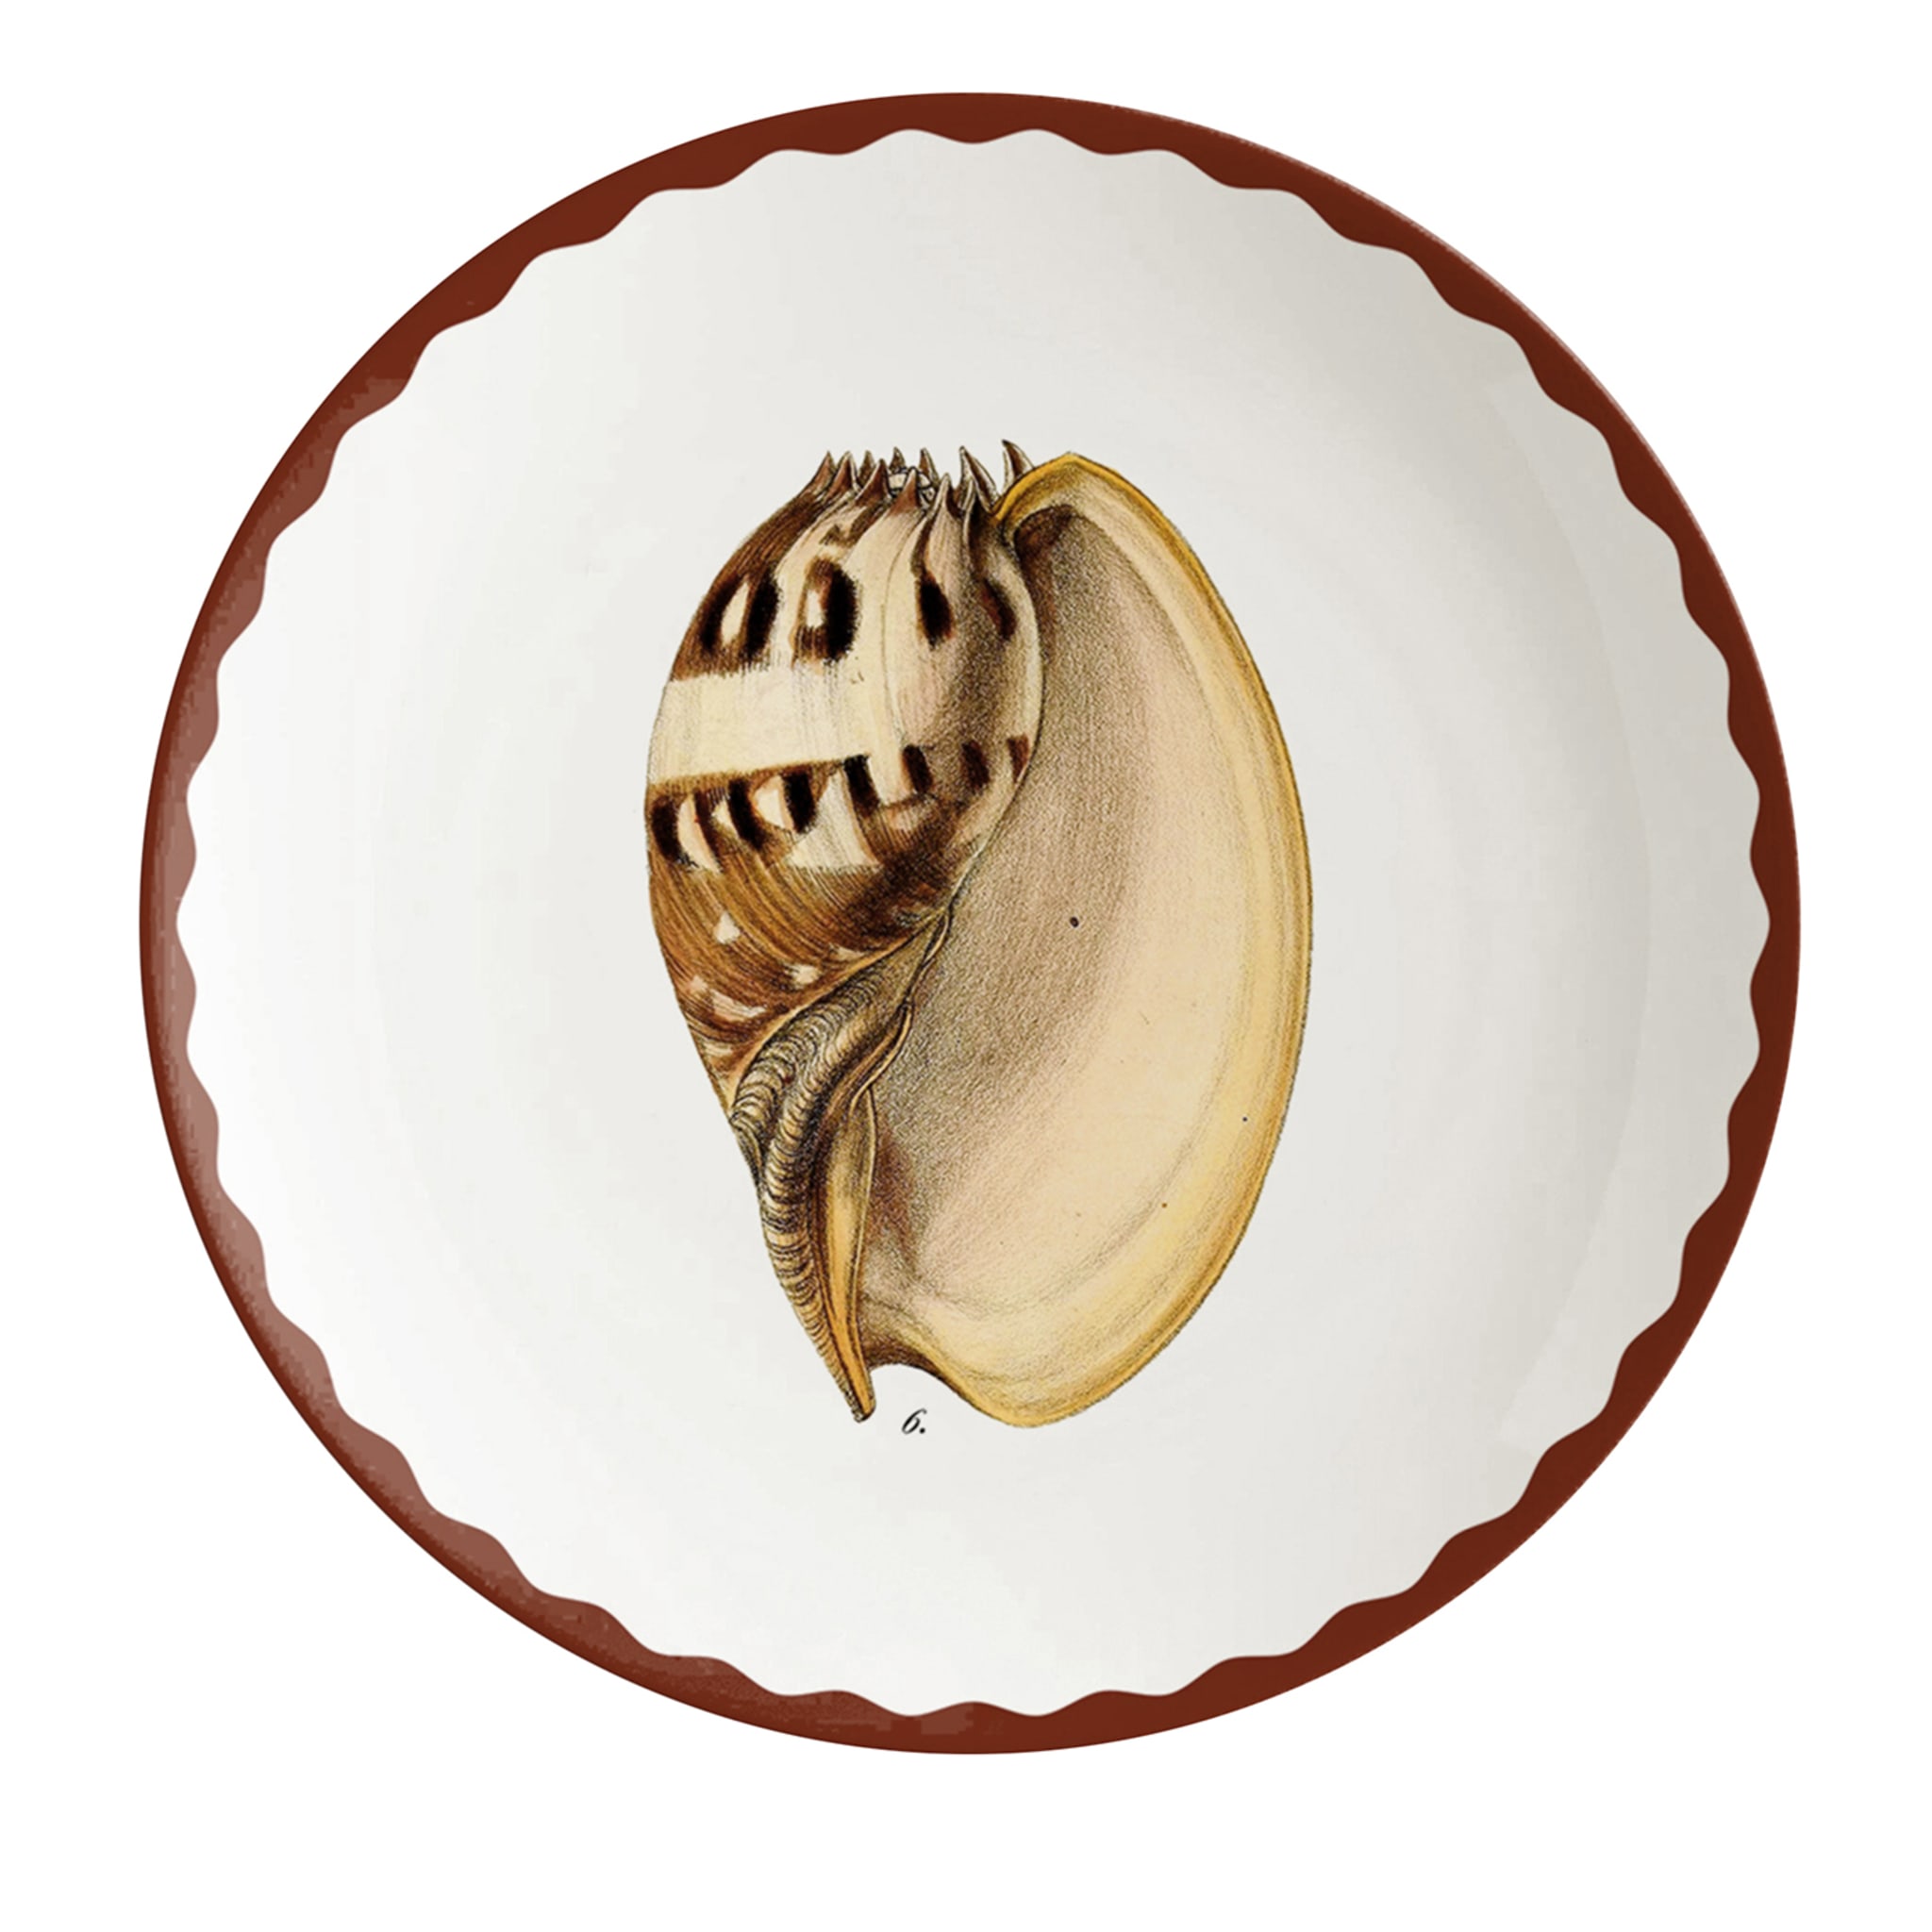 Cabinet De Curiosités Set Of 2 Porcelain Bread Plates With Shells - Main view